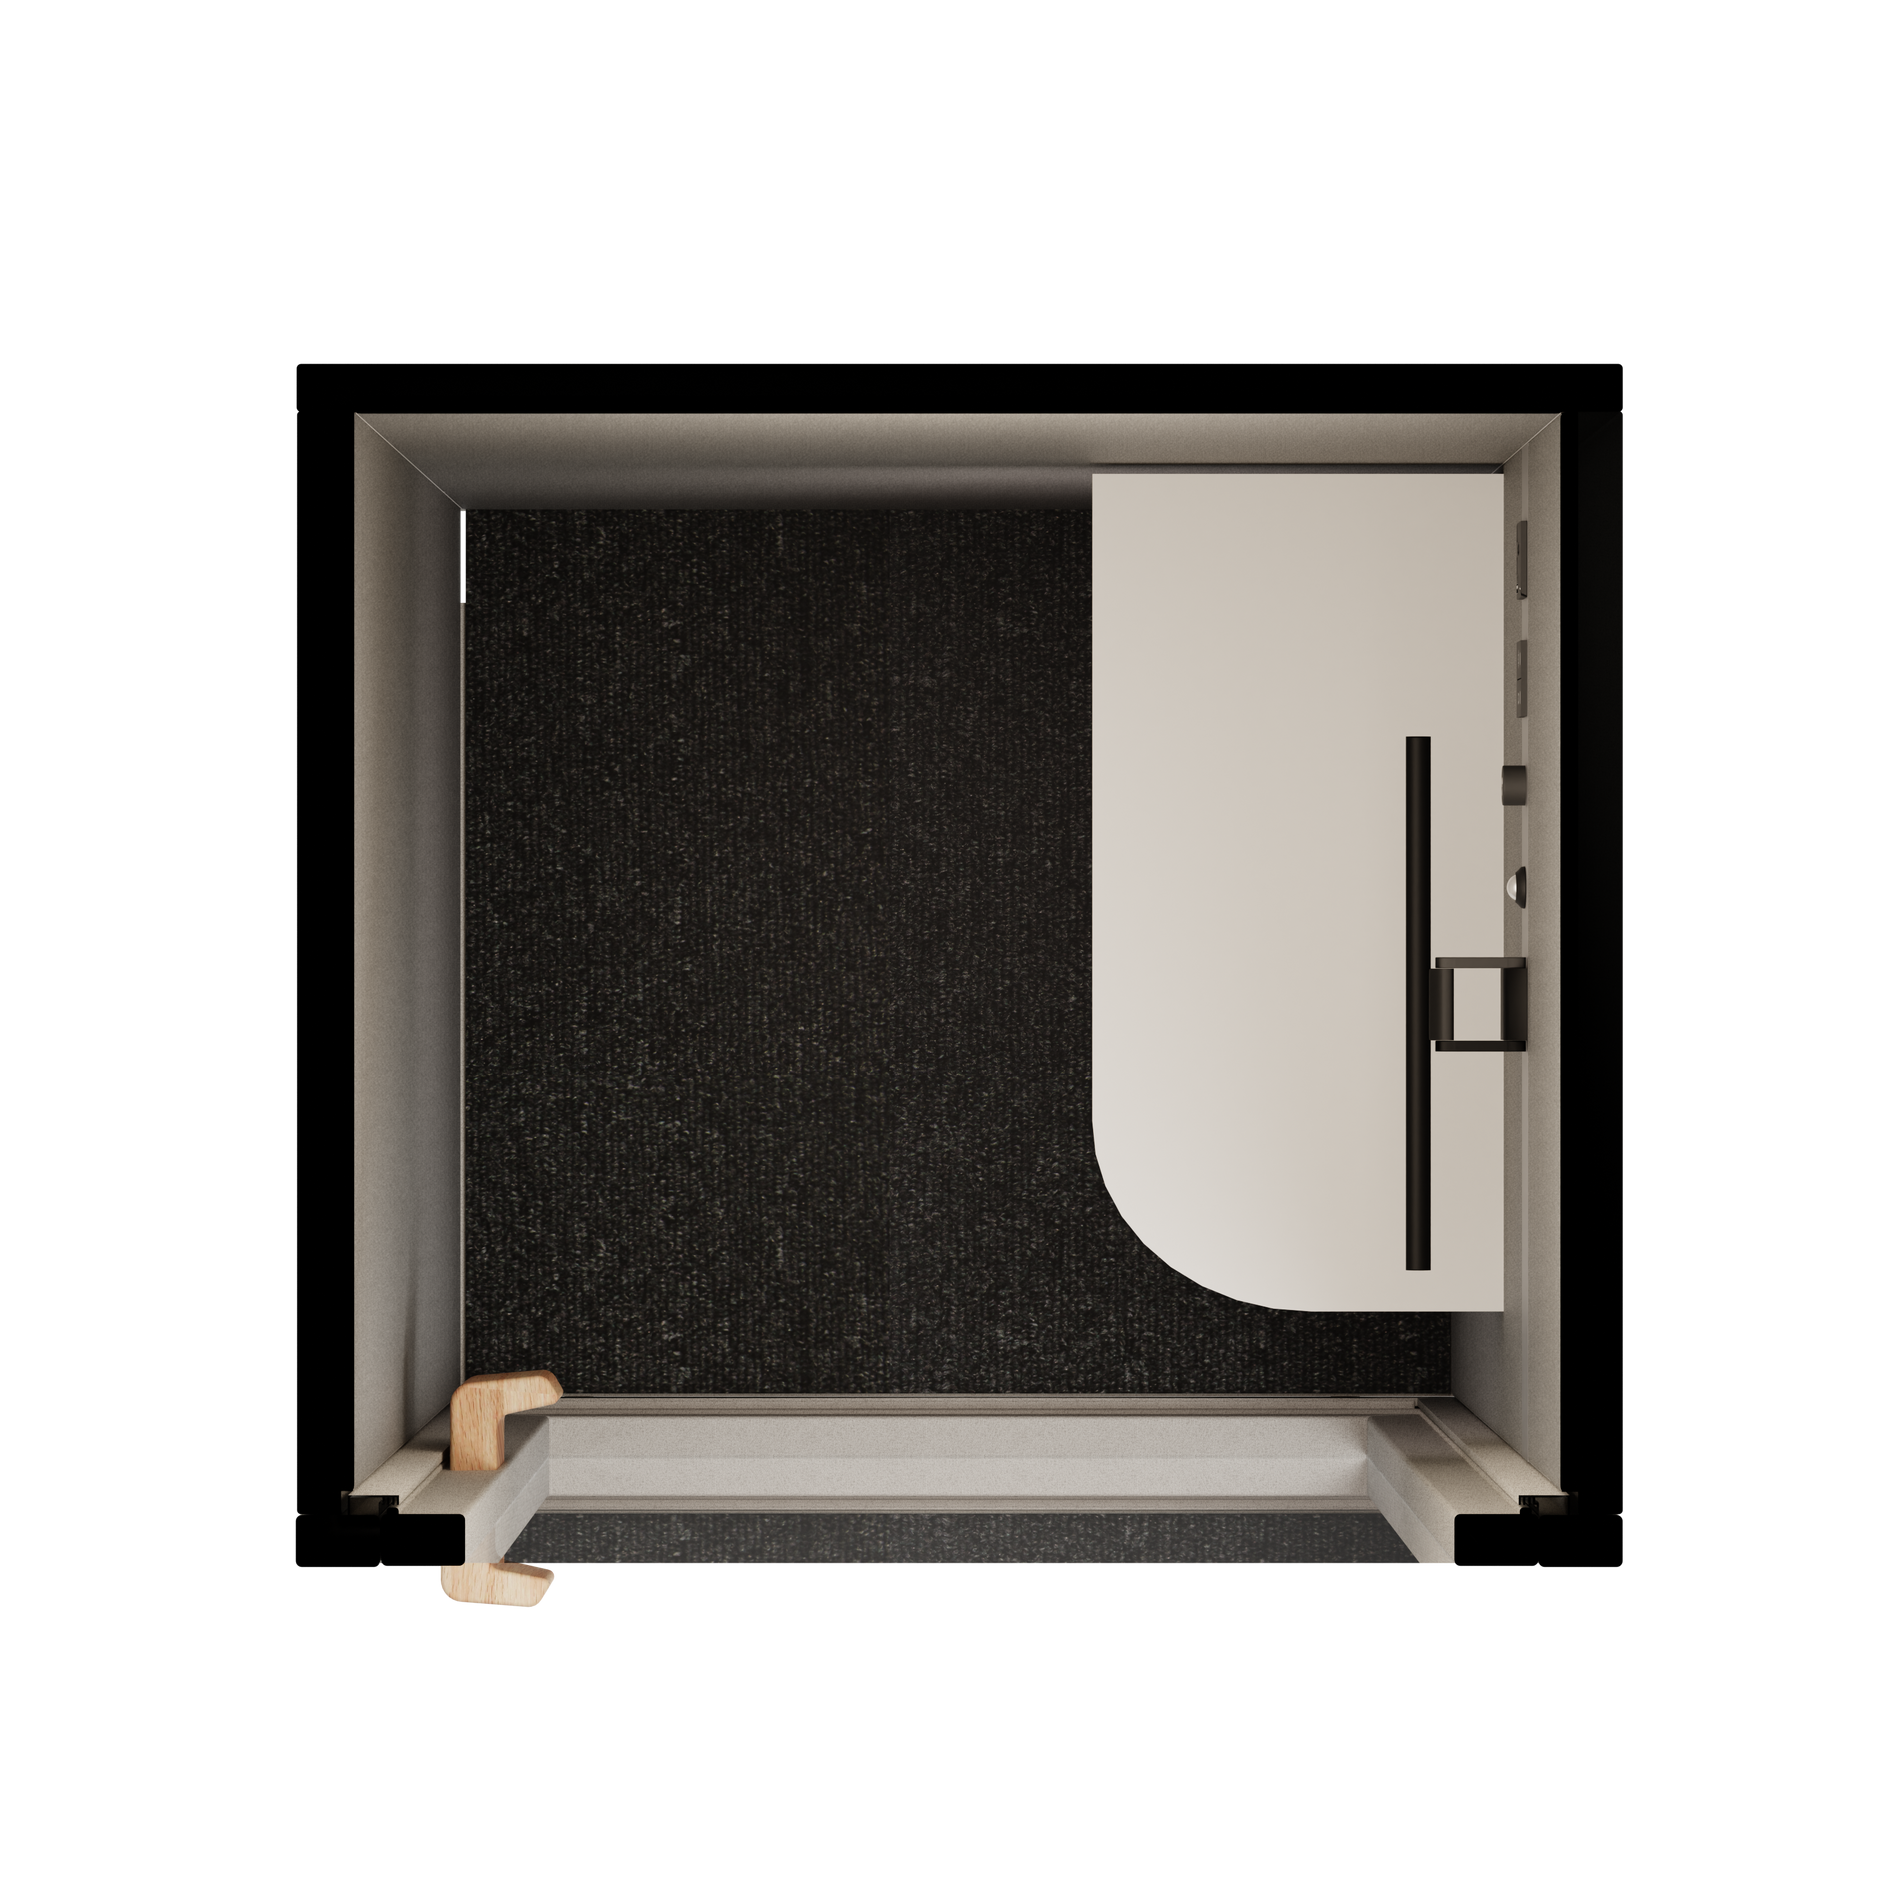 Folio Cabina de Oficina para Una Persona - De PieFolio Pebble Grey / Furniture Set 1